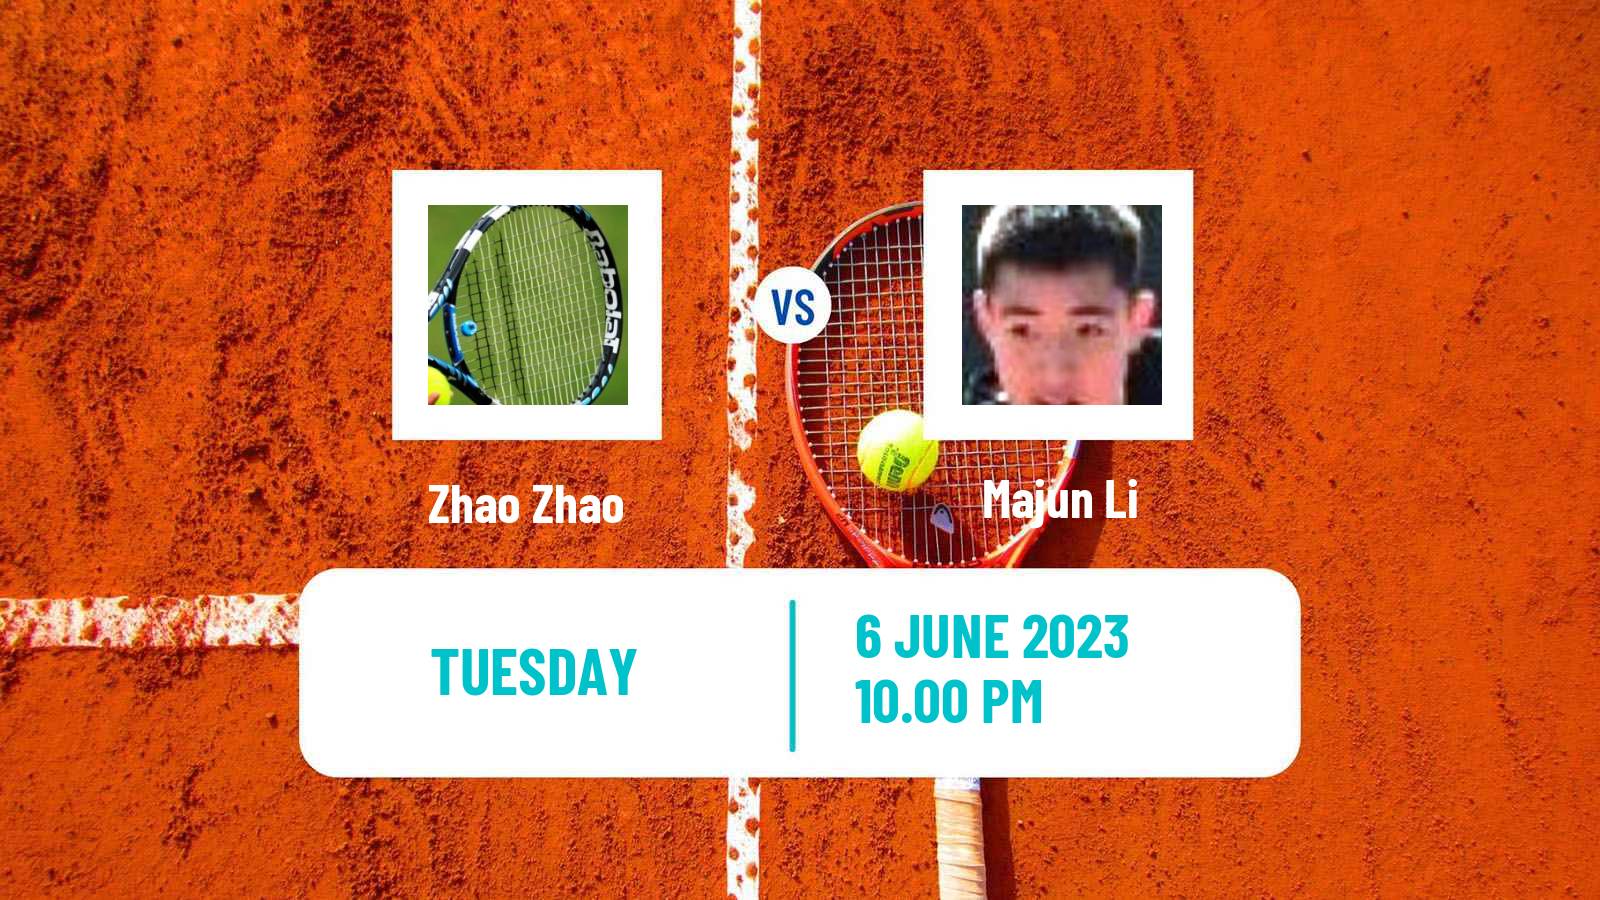 Tennis ITF M25 Luzhou Men Zhao Zhao - Majun Li